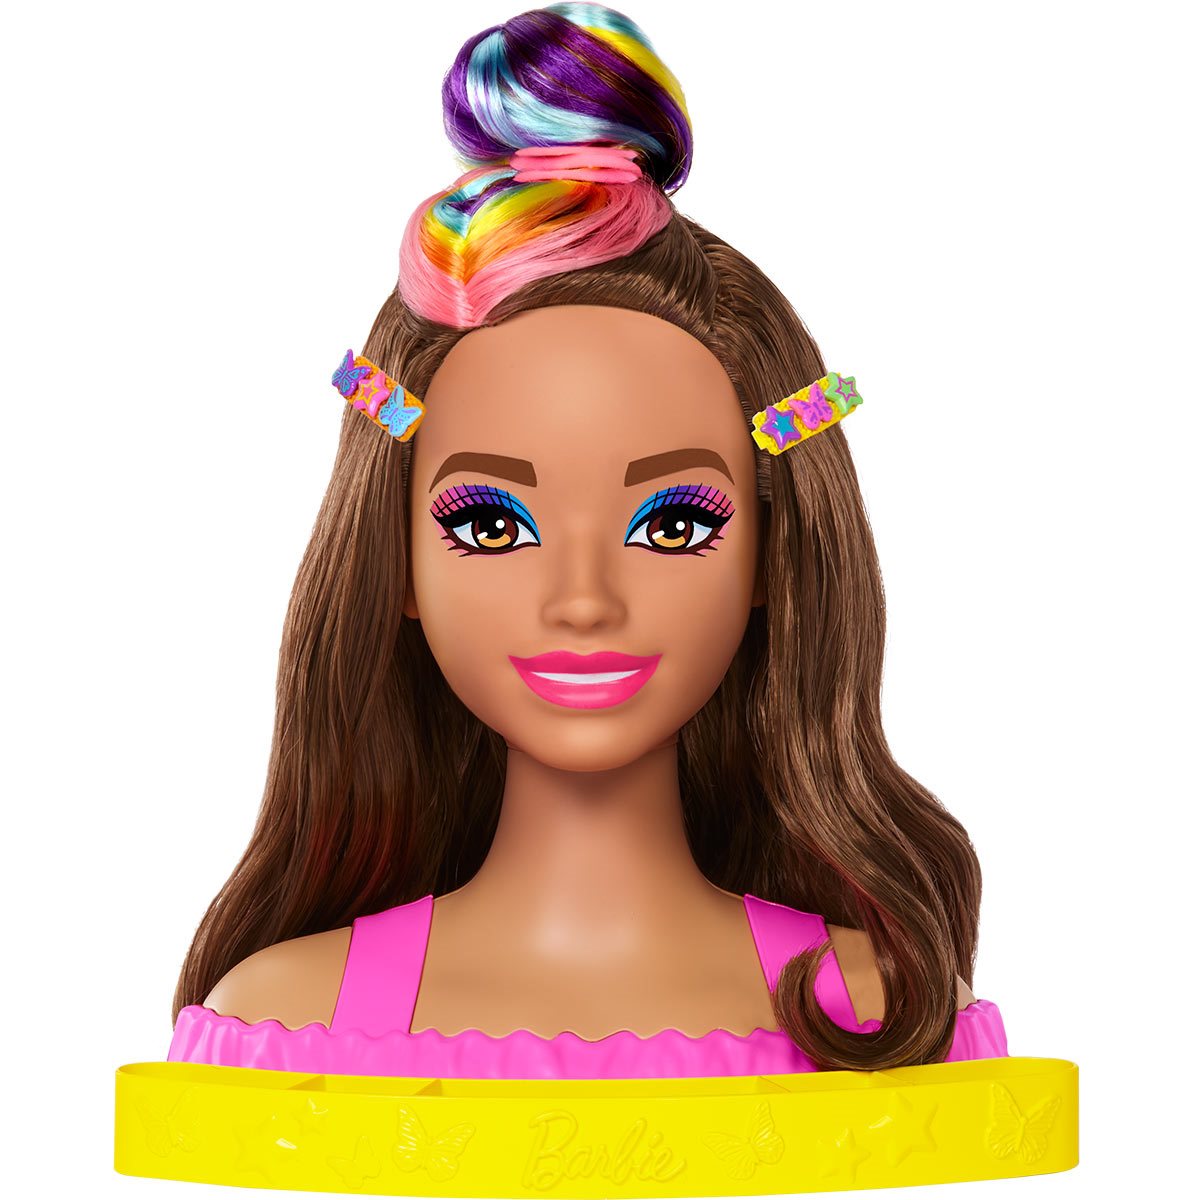 Barbie Styling Head by Mattel